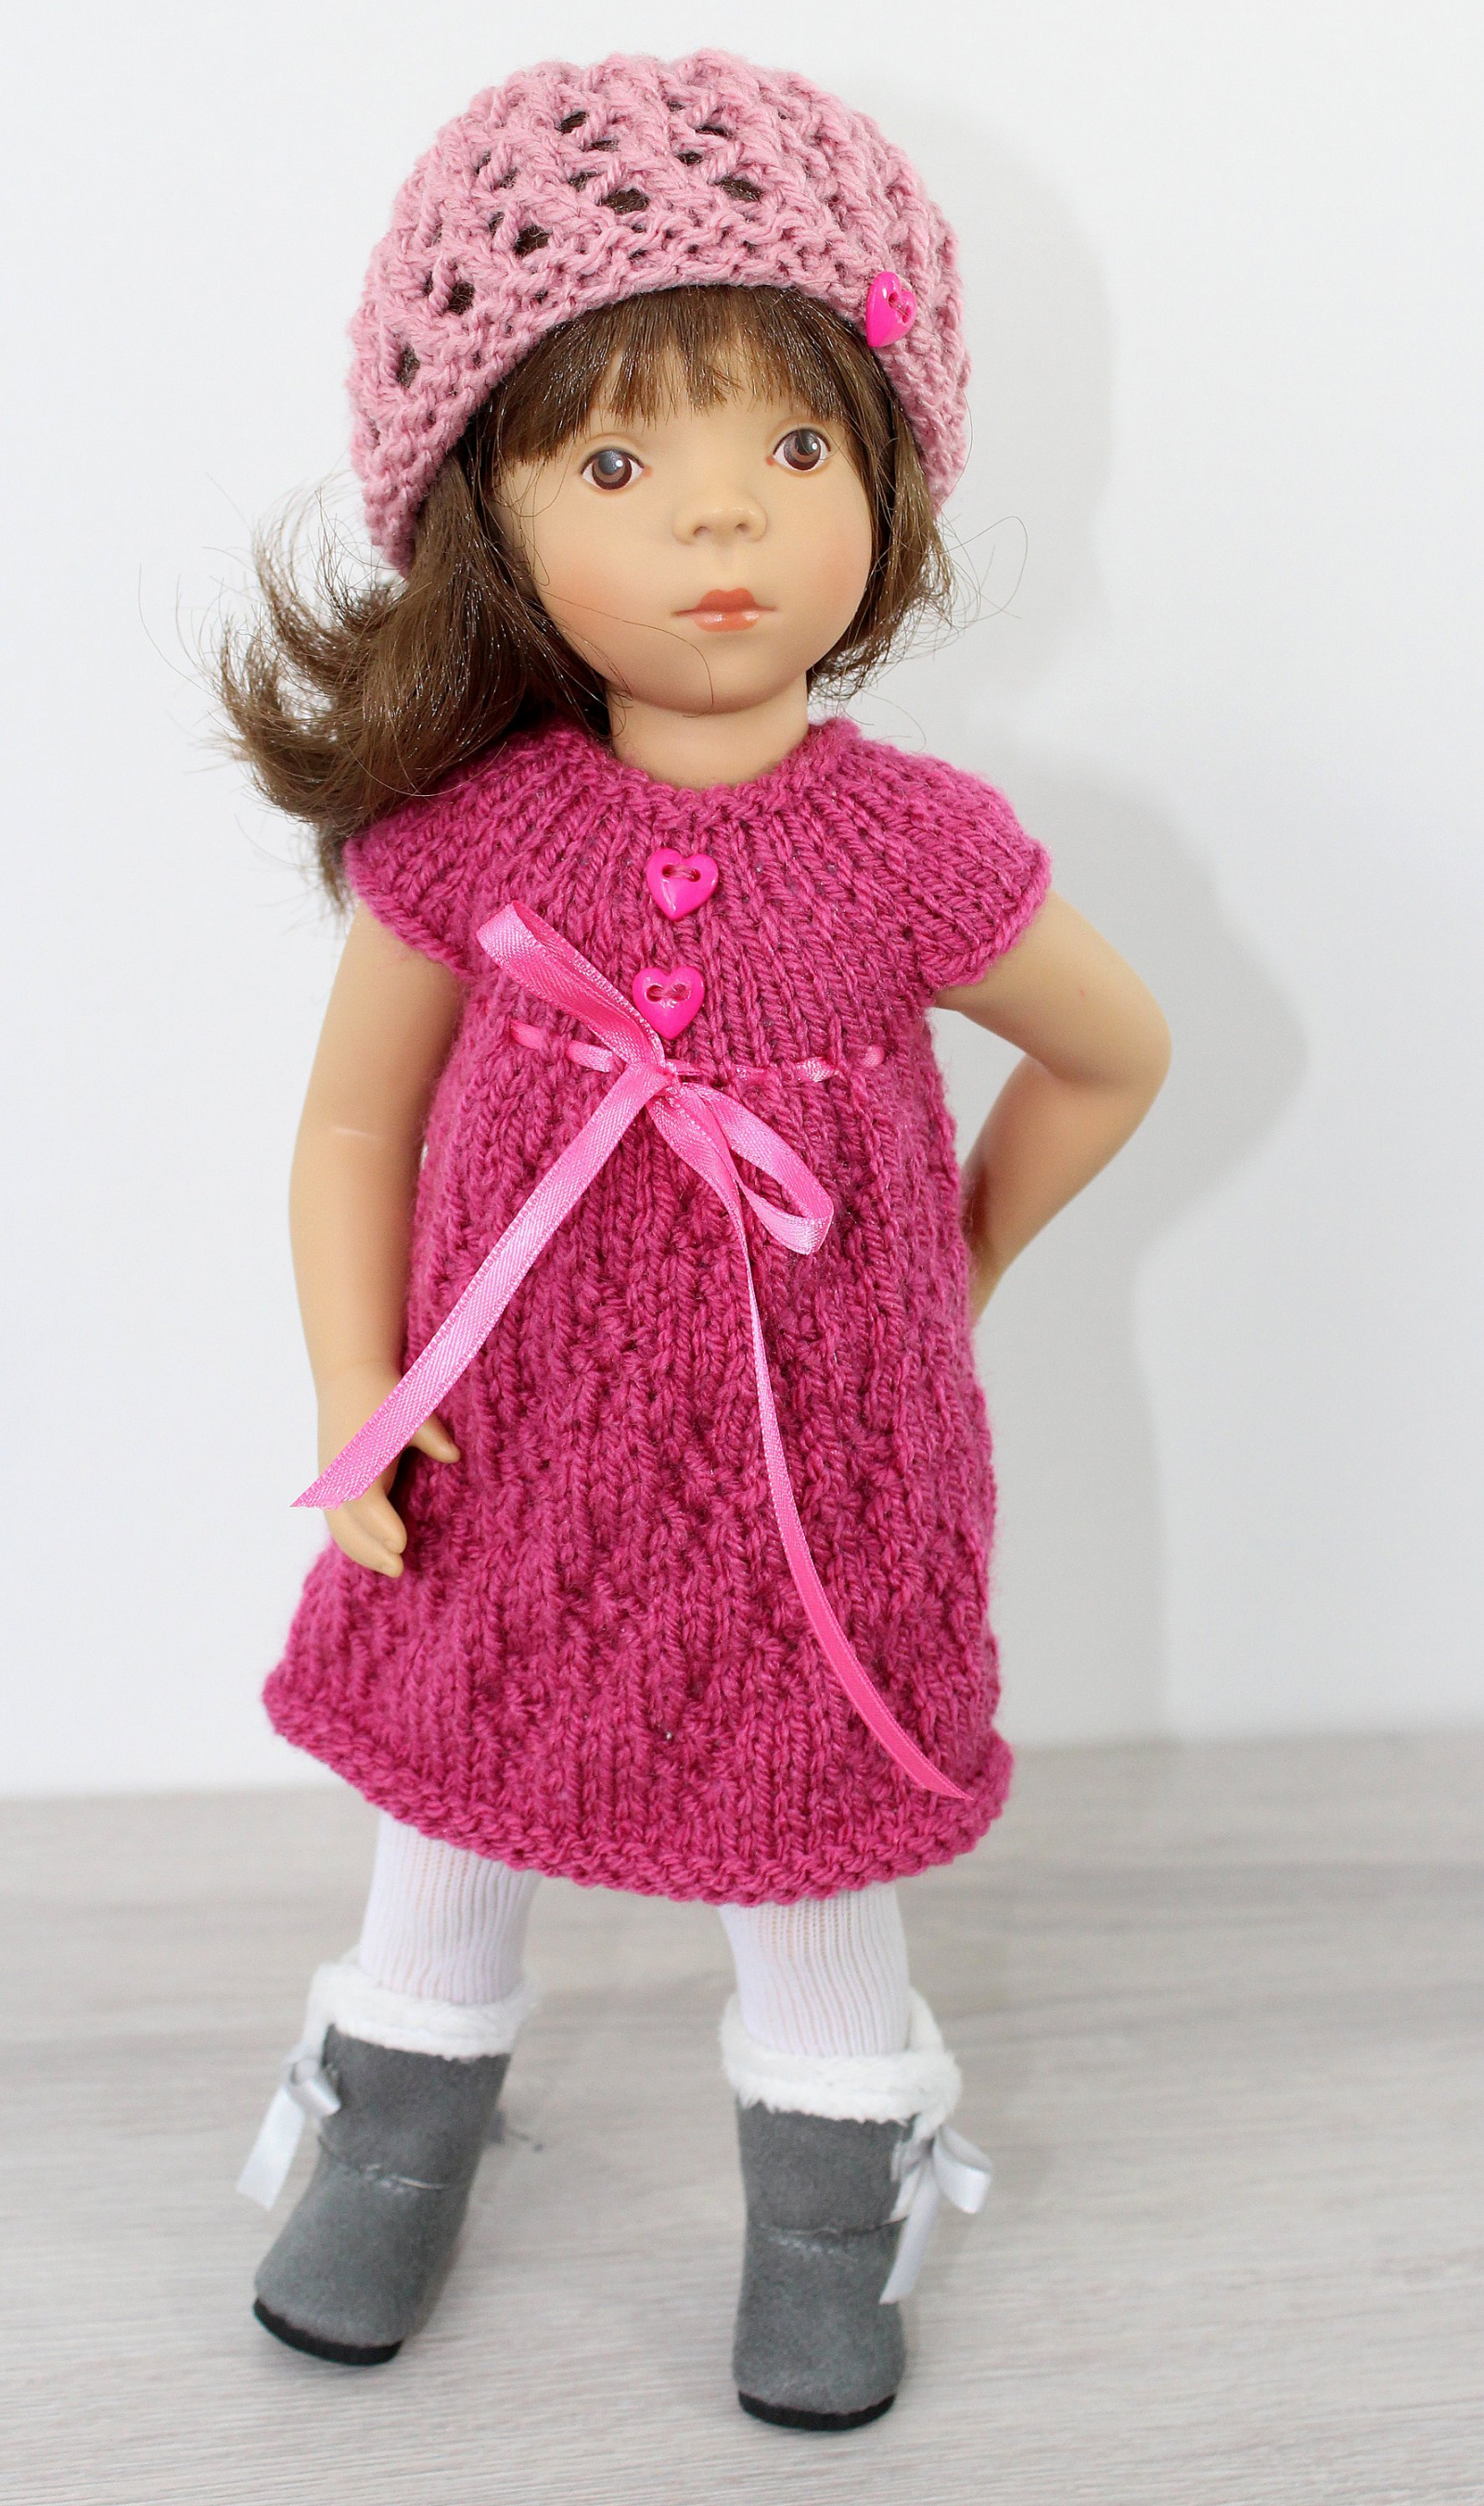 Knitting pattern for for Sylvia Natterer Minouch doll. | CSKraft4dolls